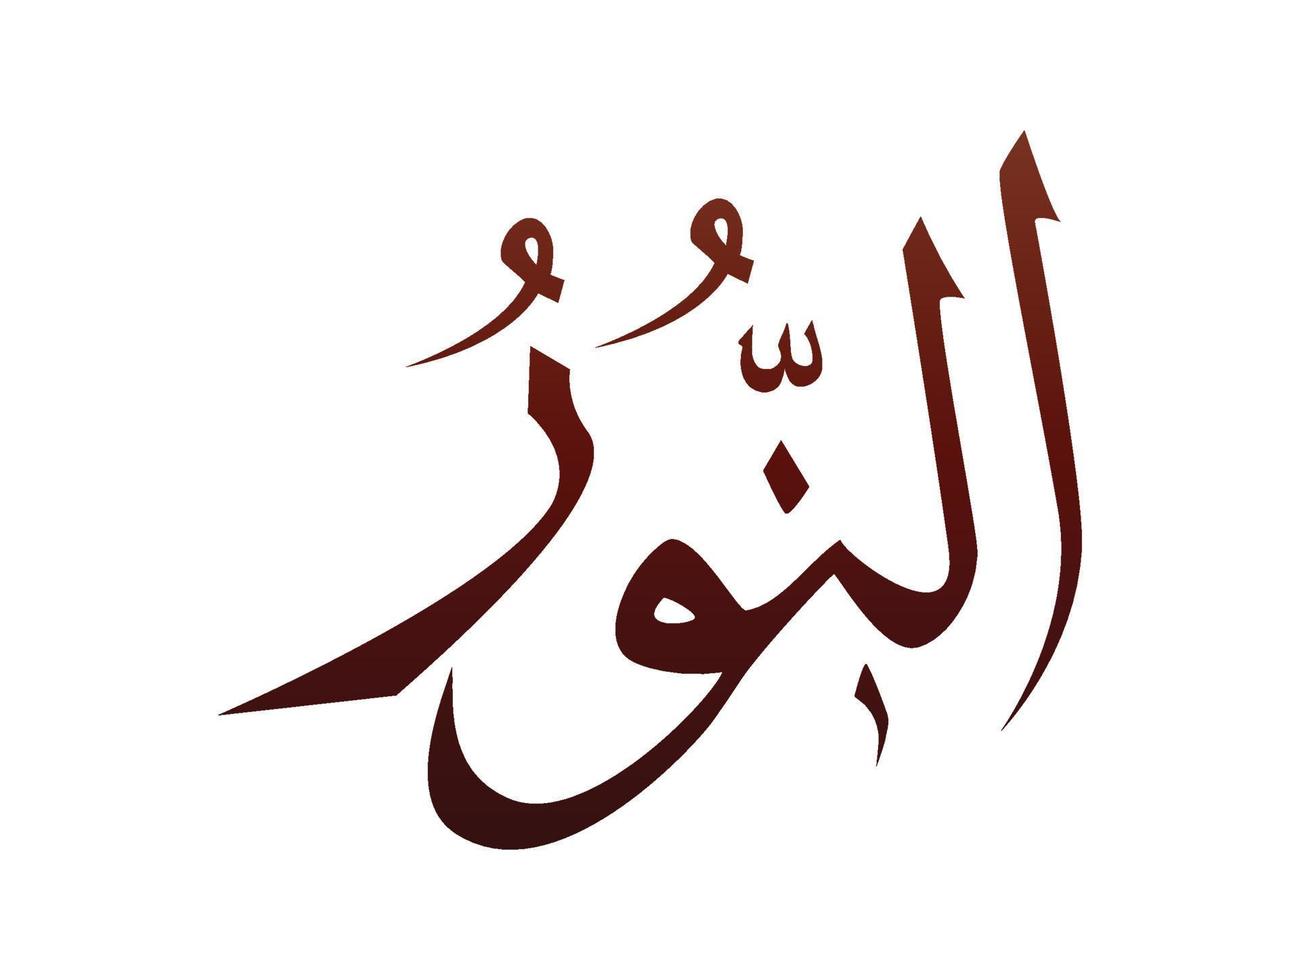 islámico religioso árabe árabe caligrafía marca de alá nombre patrón vector alá nombre de dios